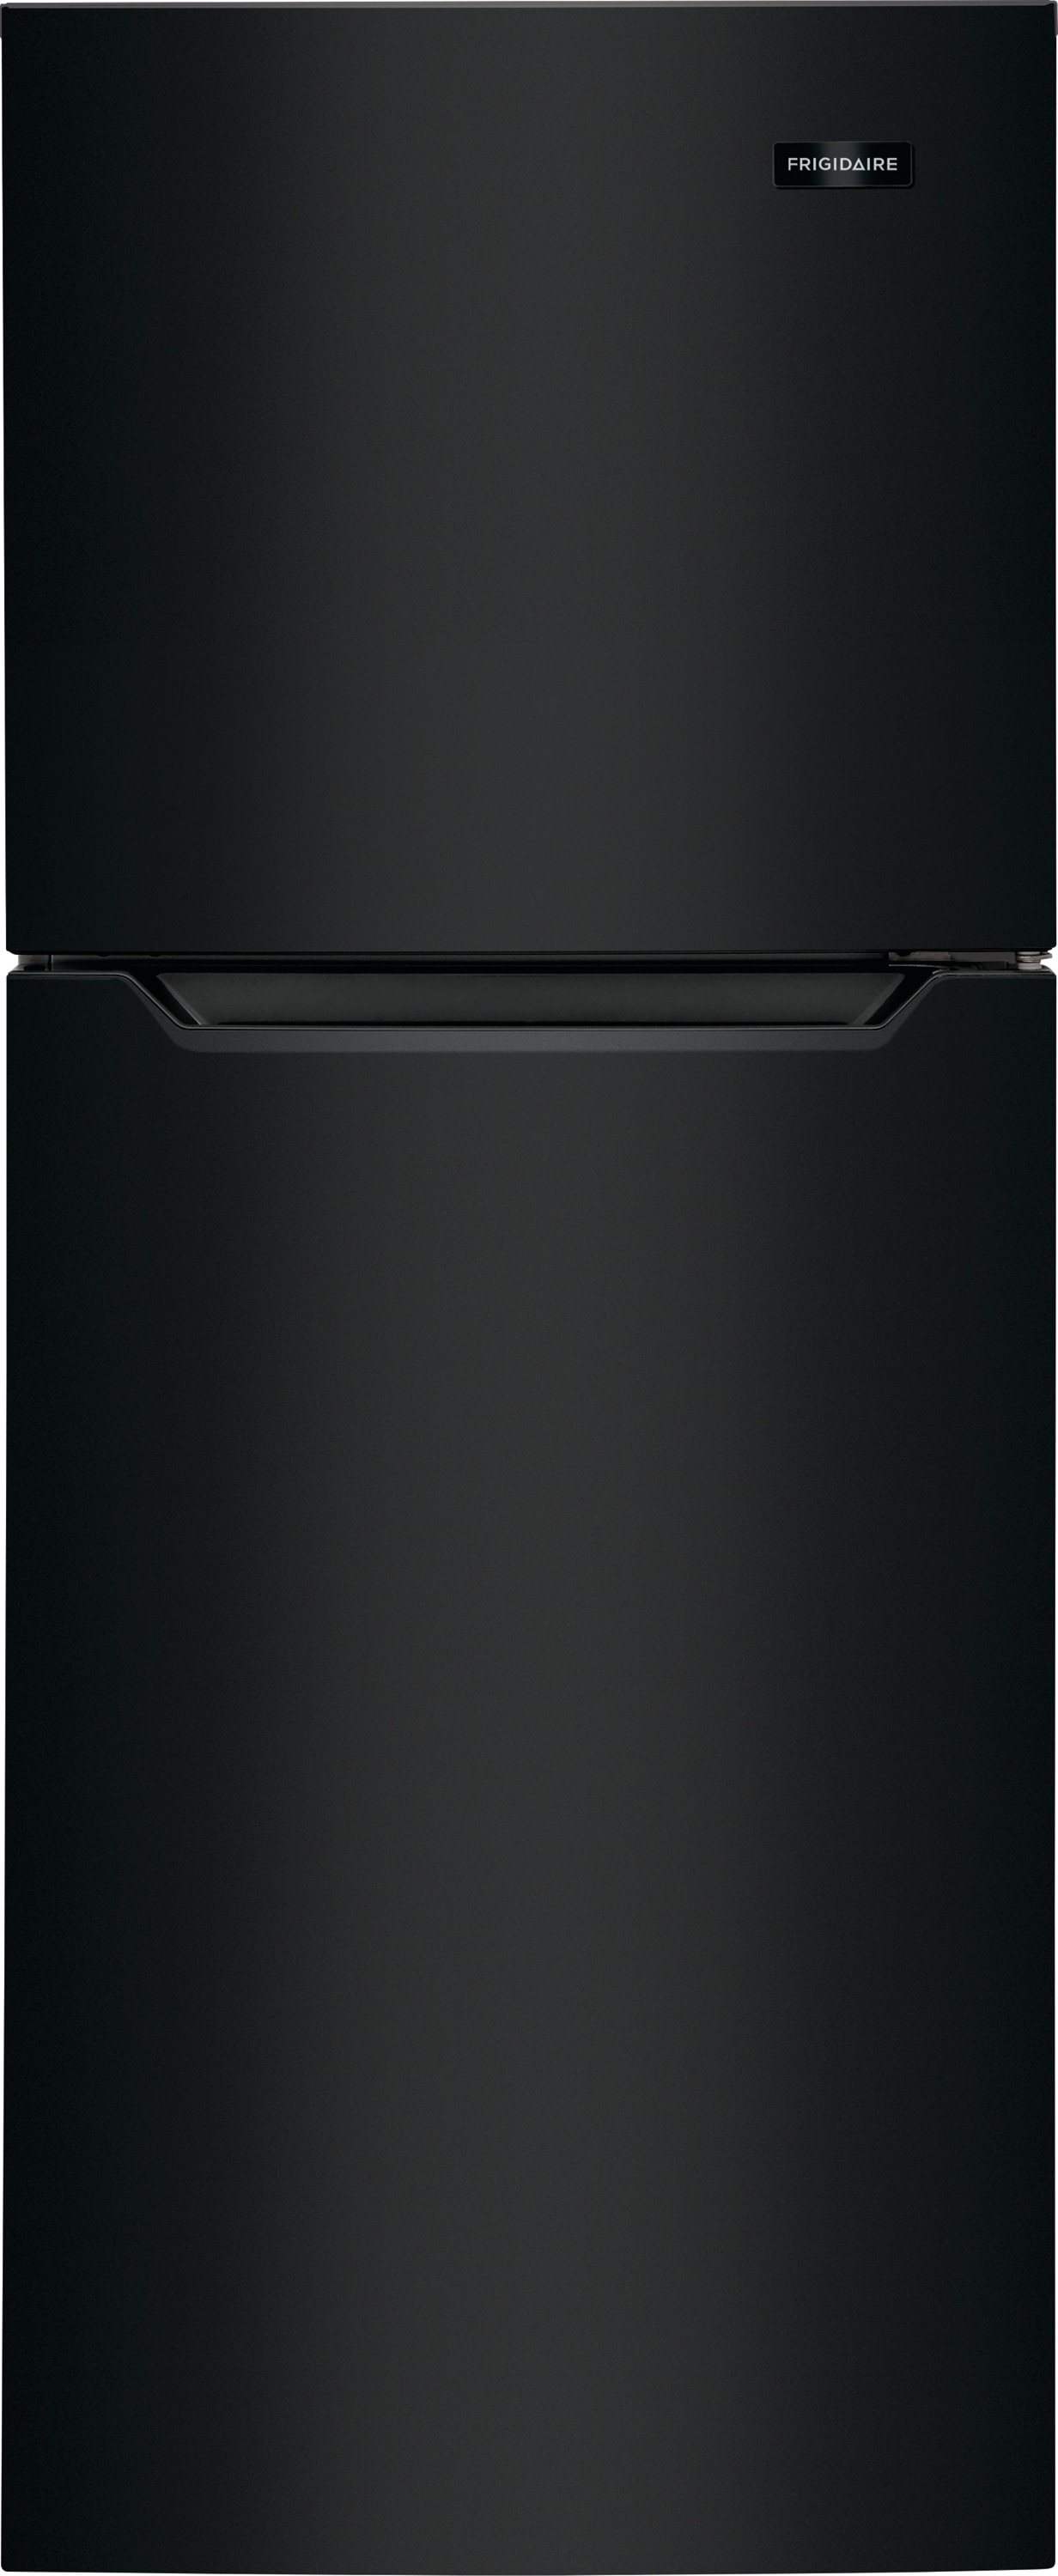 Frigidaire 10.1-cu ft Top-Freezer Refrigerator (Black) ENERGY STAR